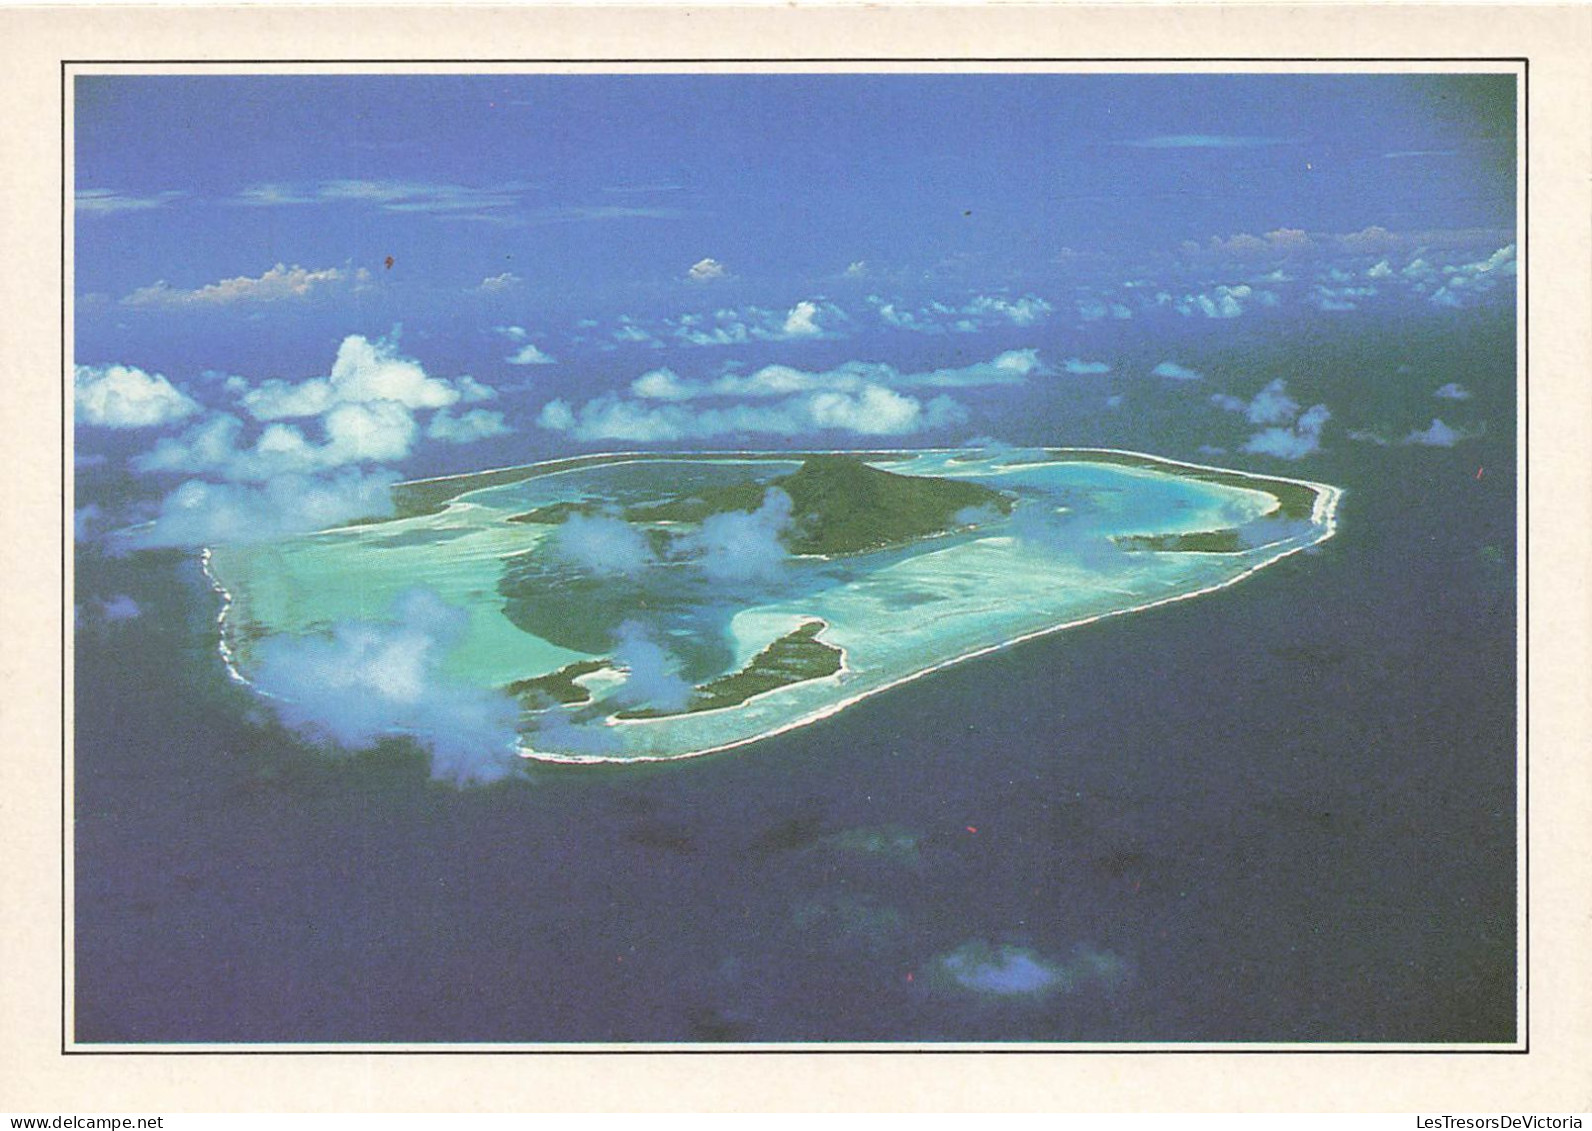 POLYNESIE FRANCAISE - Maupiti - L'île Vue D'avion - Colorisé - Carte Postale - Polynésie Française